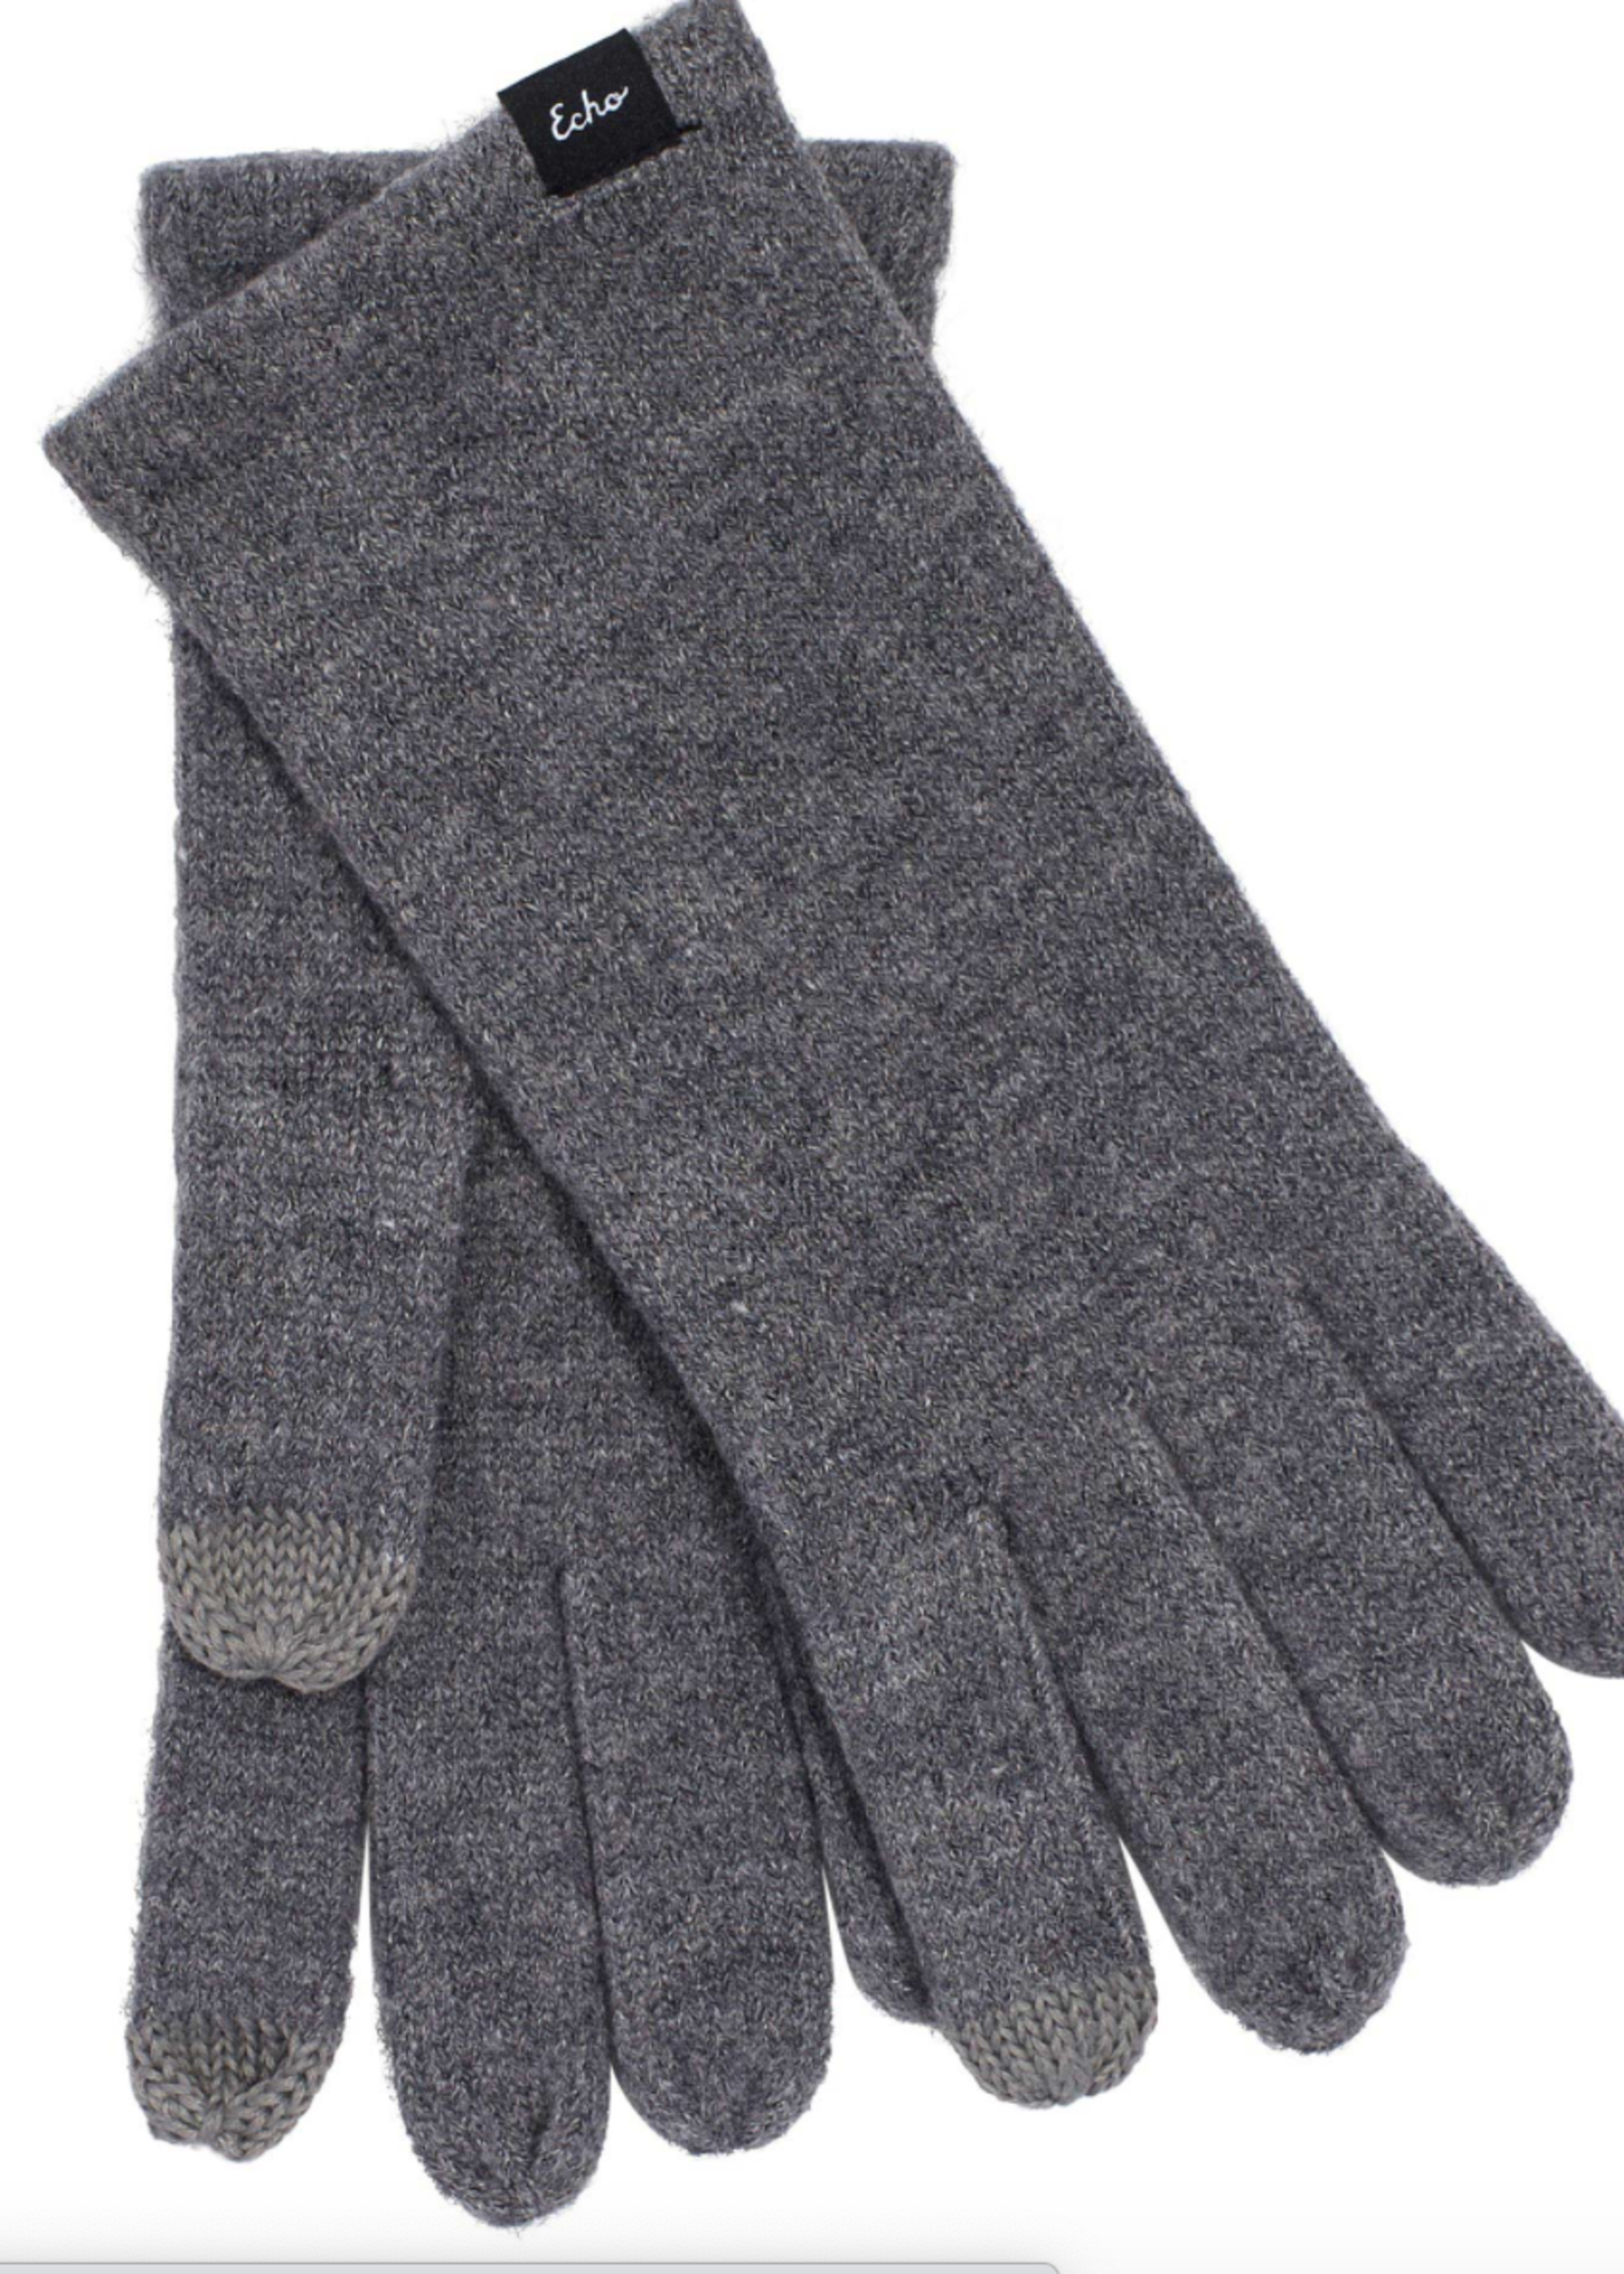 Echo Design Touch Gloves